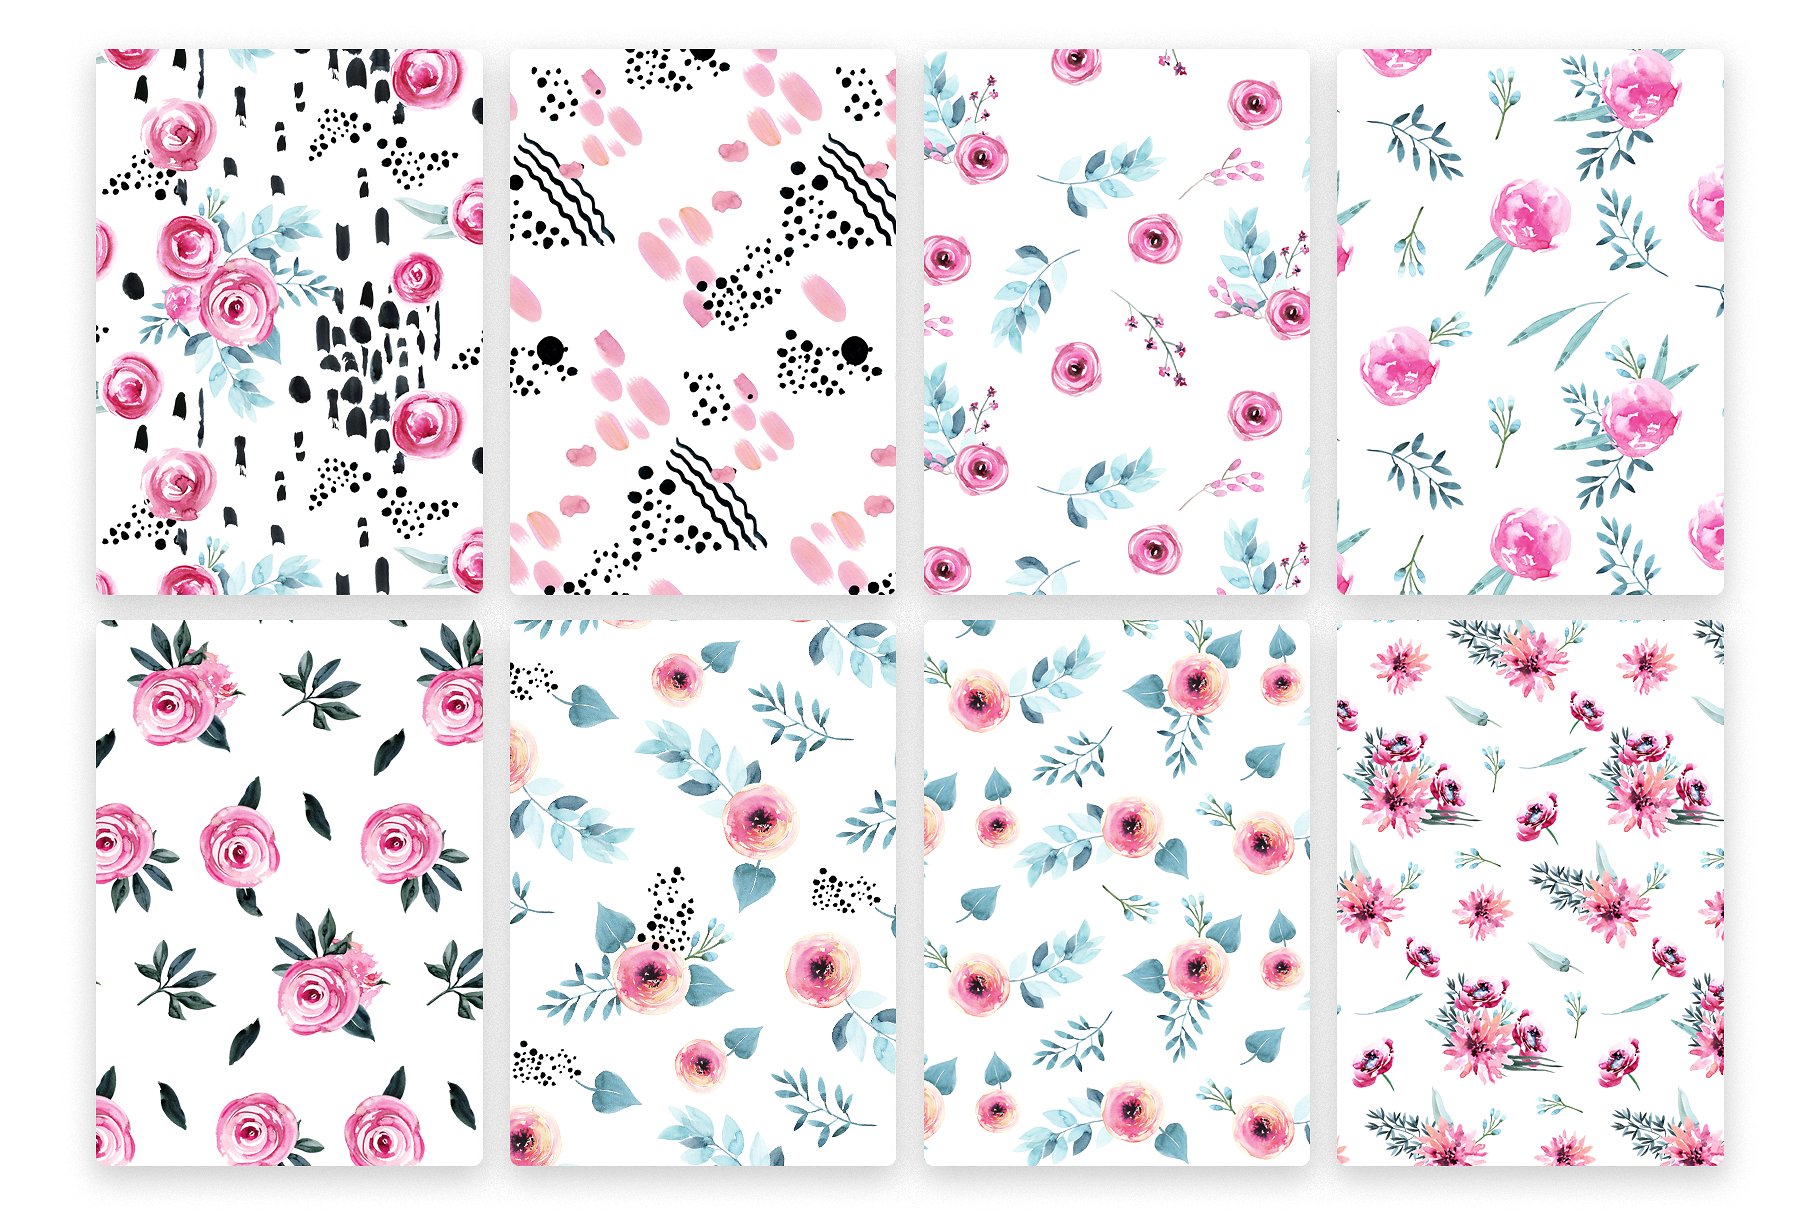 极力推荐：花卉图案纹理集合 Floral Patterns Bundle Vol.2 [3.45GB, 超过120款图案]插图(23)